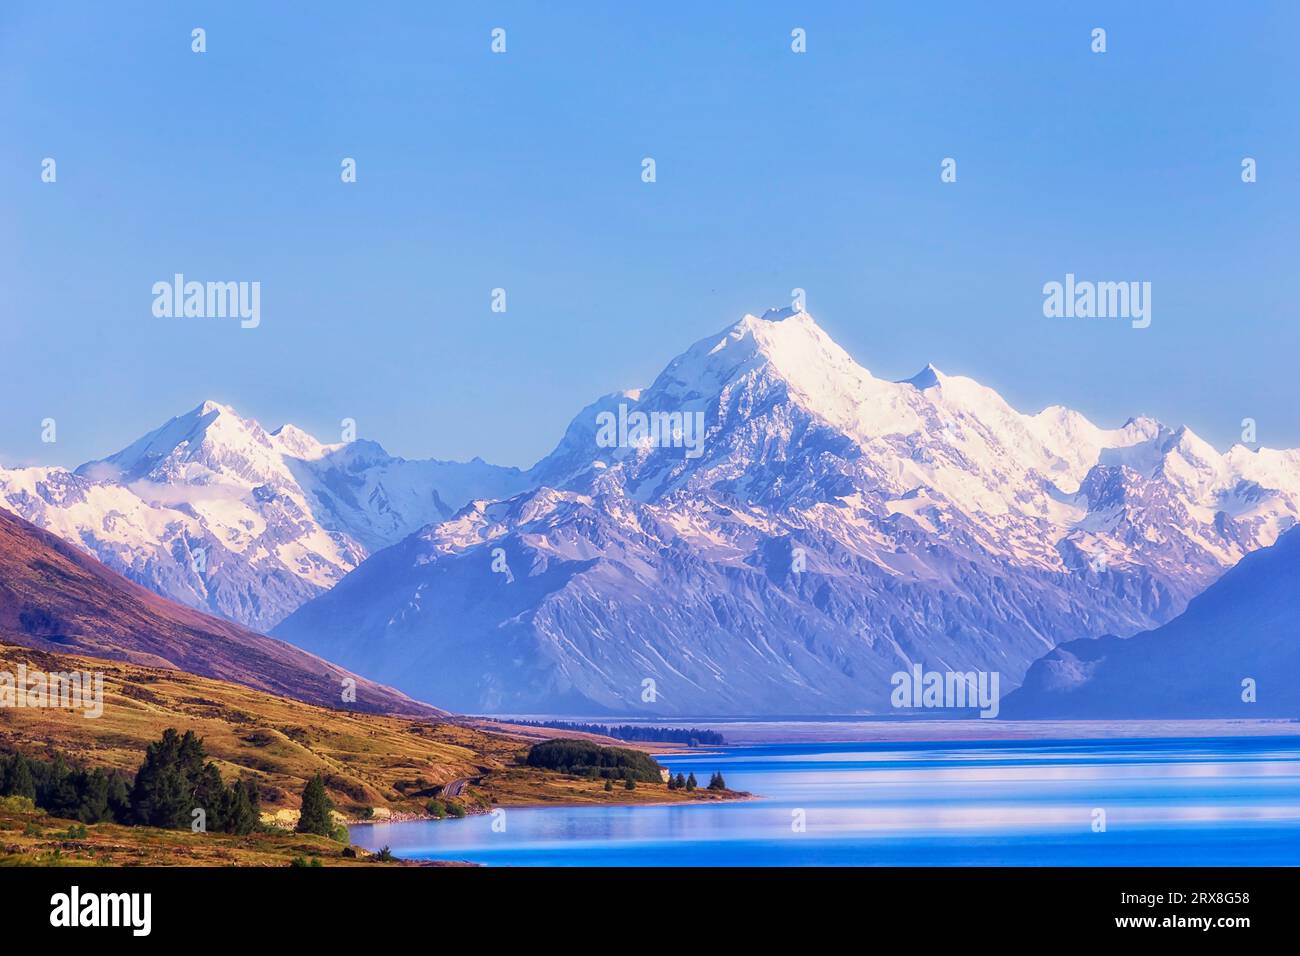 Majestätischer Mt Cook über dem Lake Pukaki in Neuseeland - beliebtes Touristenziel und ikonische Landschaft. Stockfoto